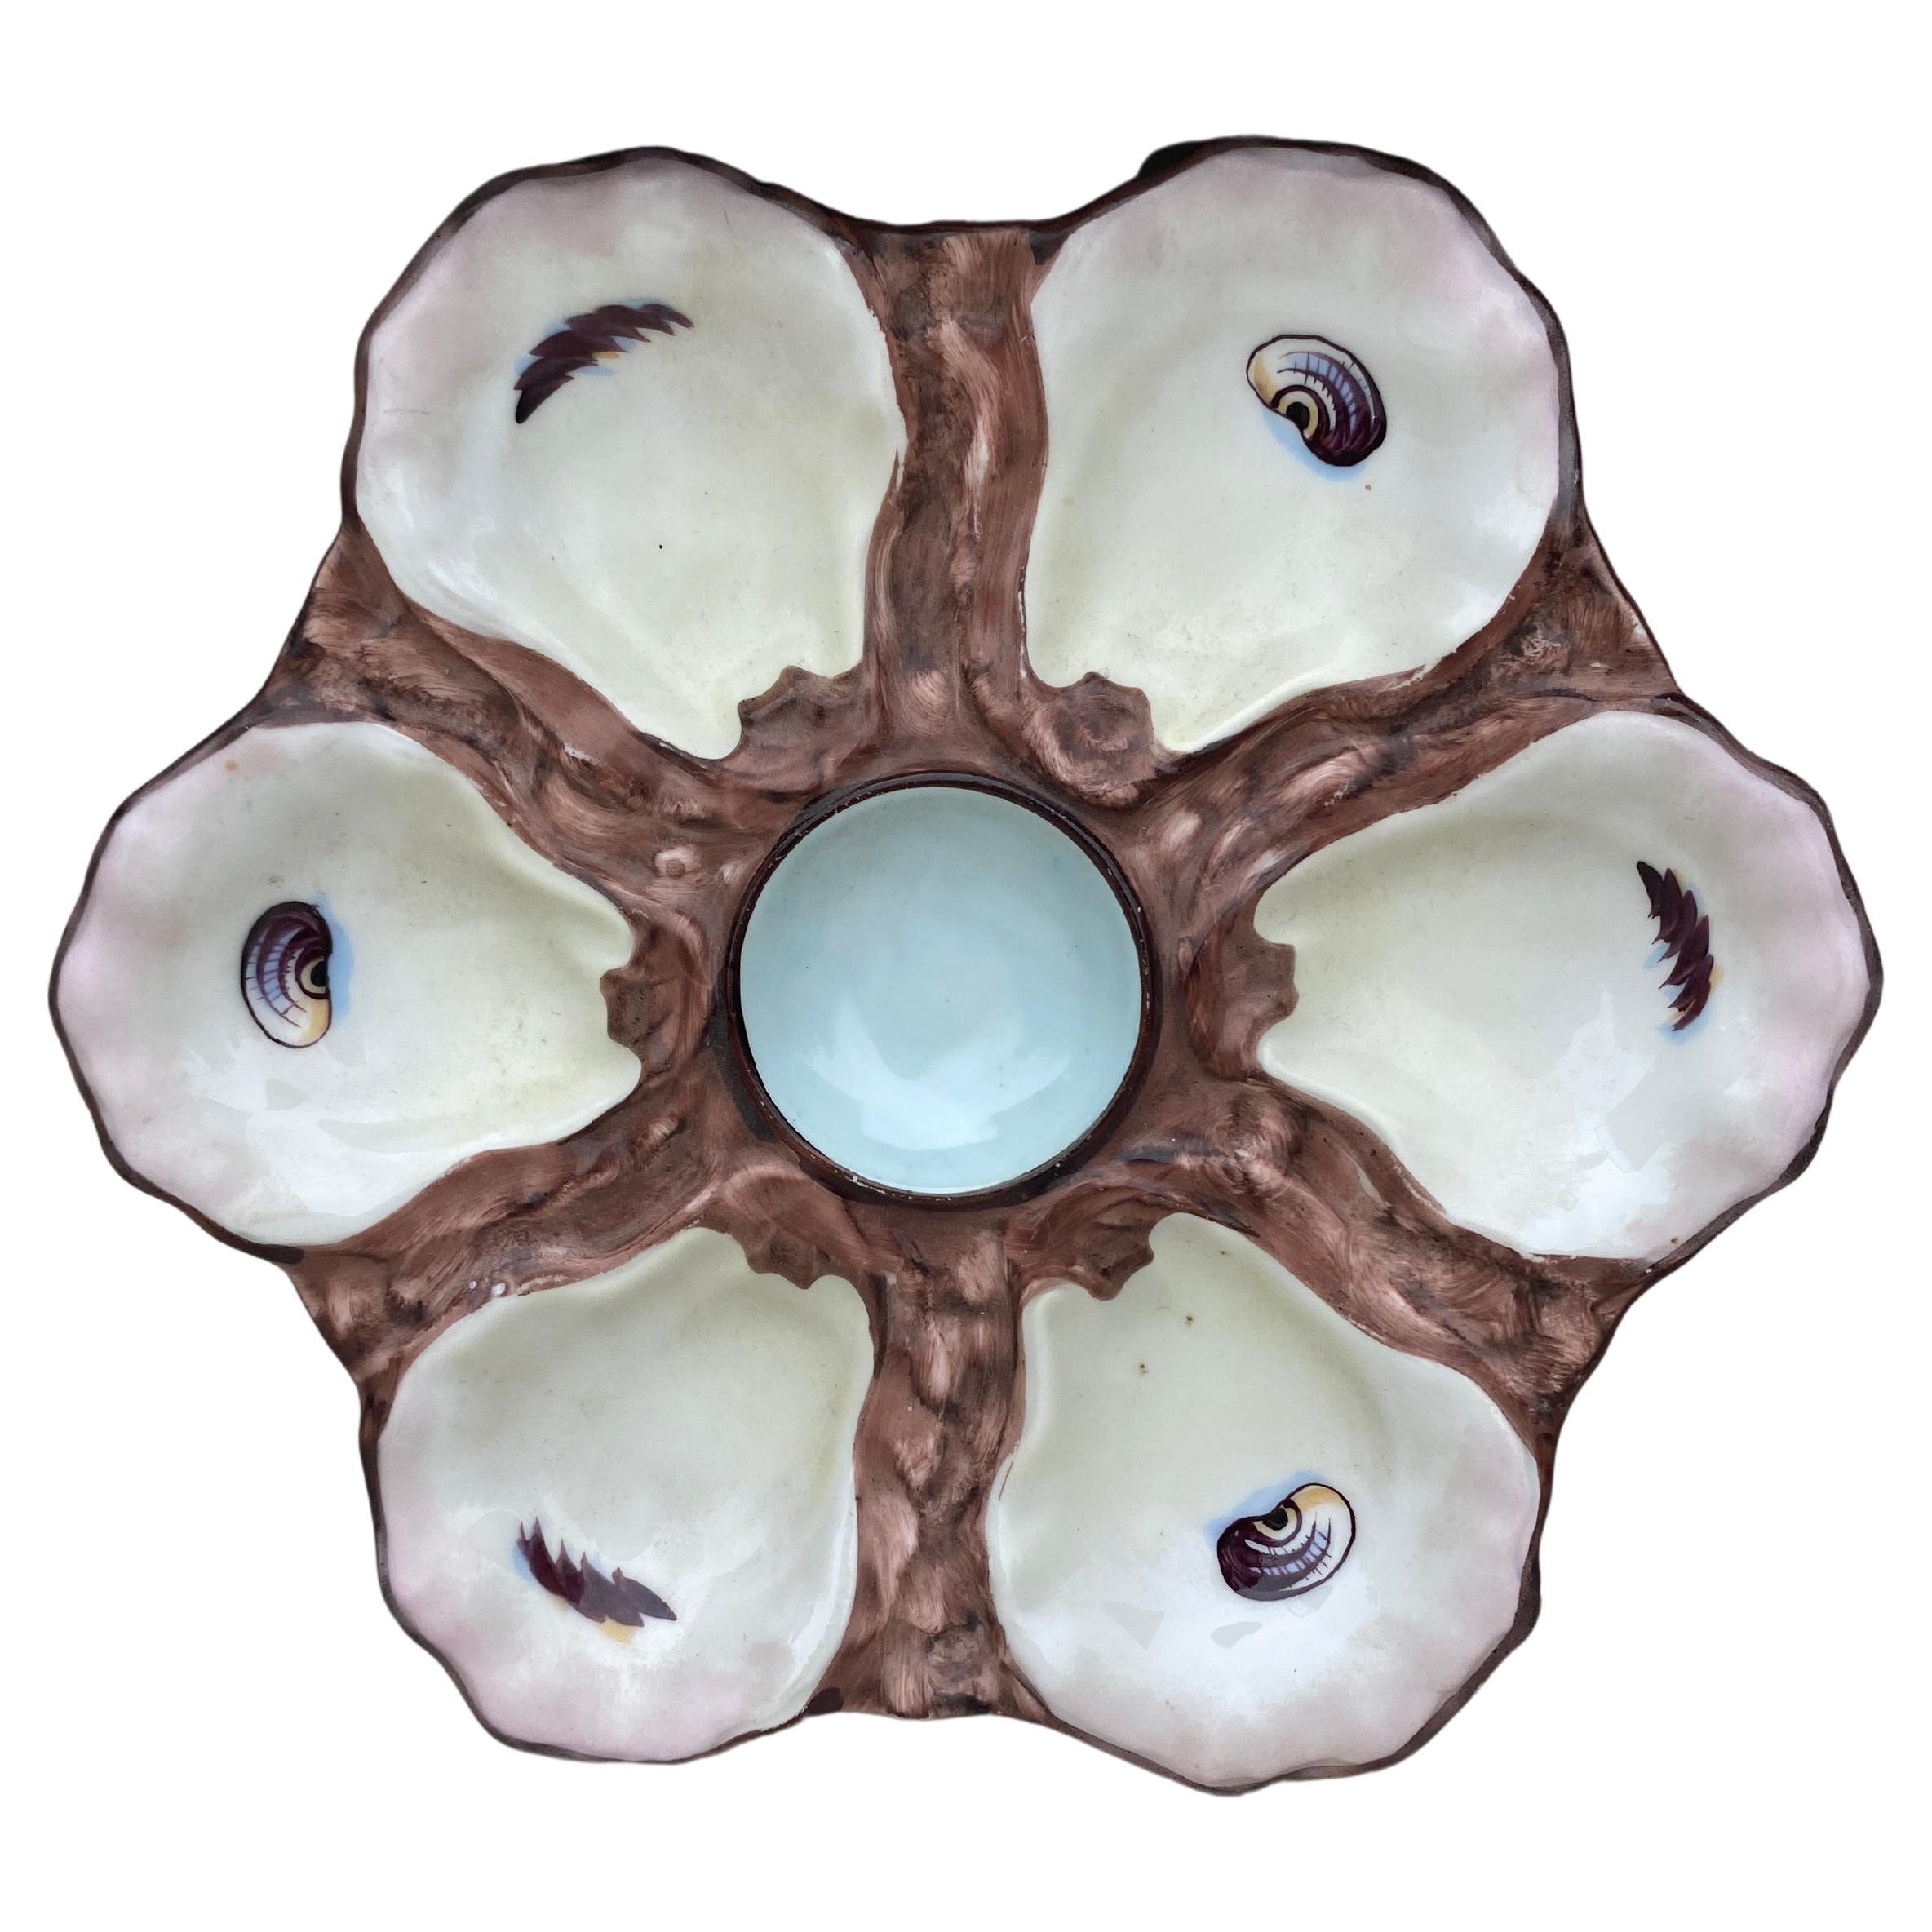 Plato de ostras de porcelana con conchas, hacia 1900